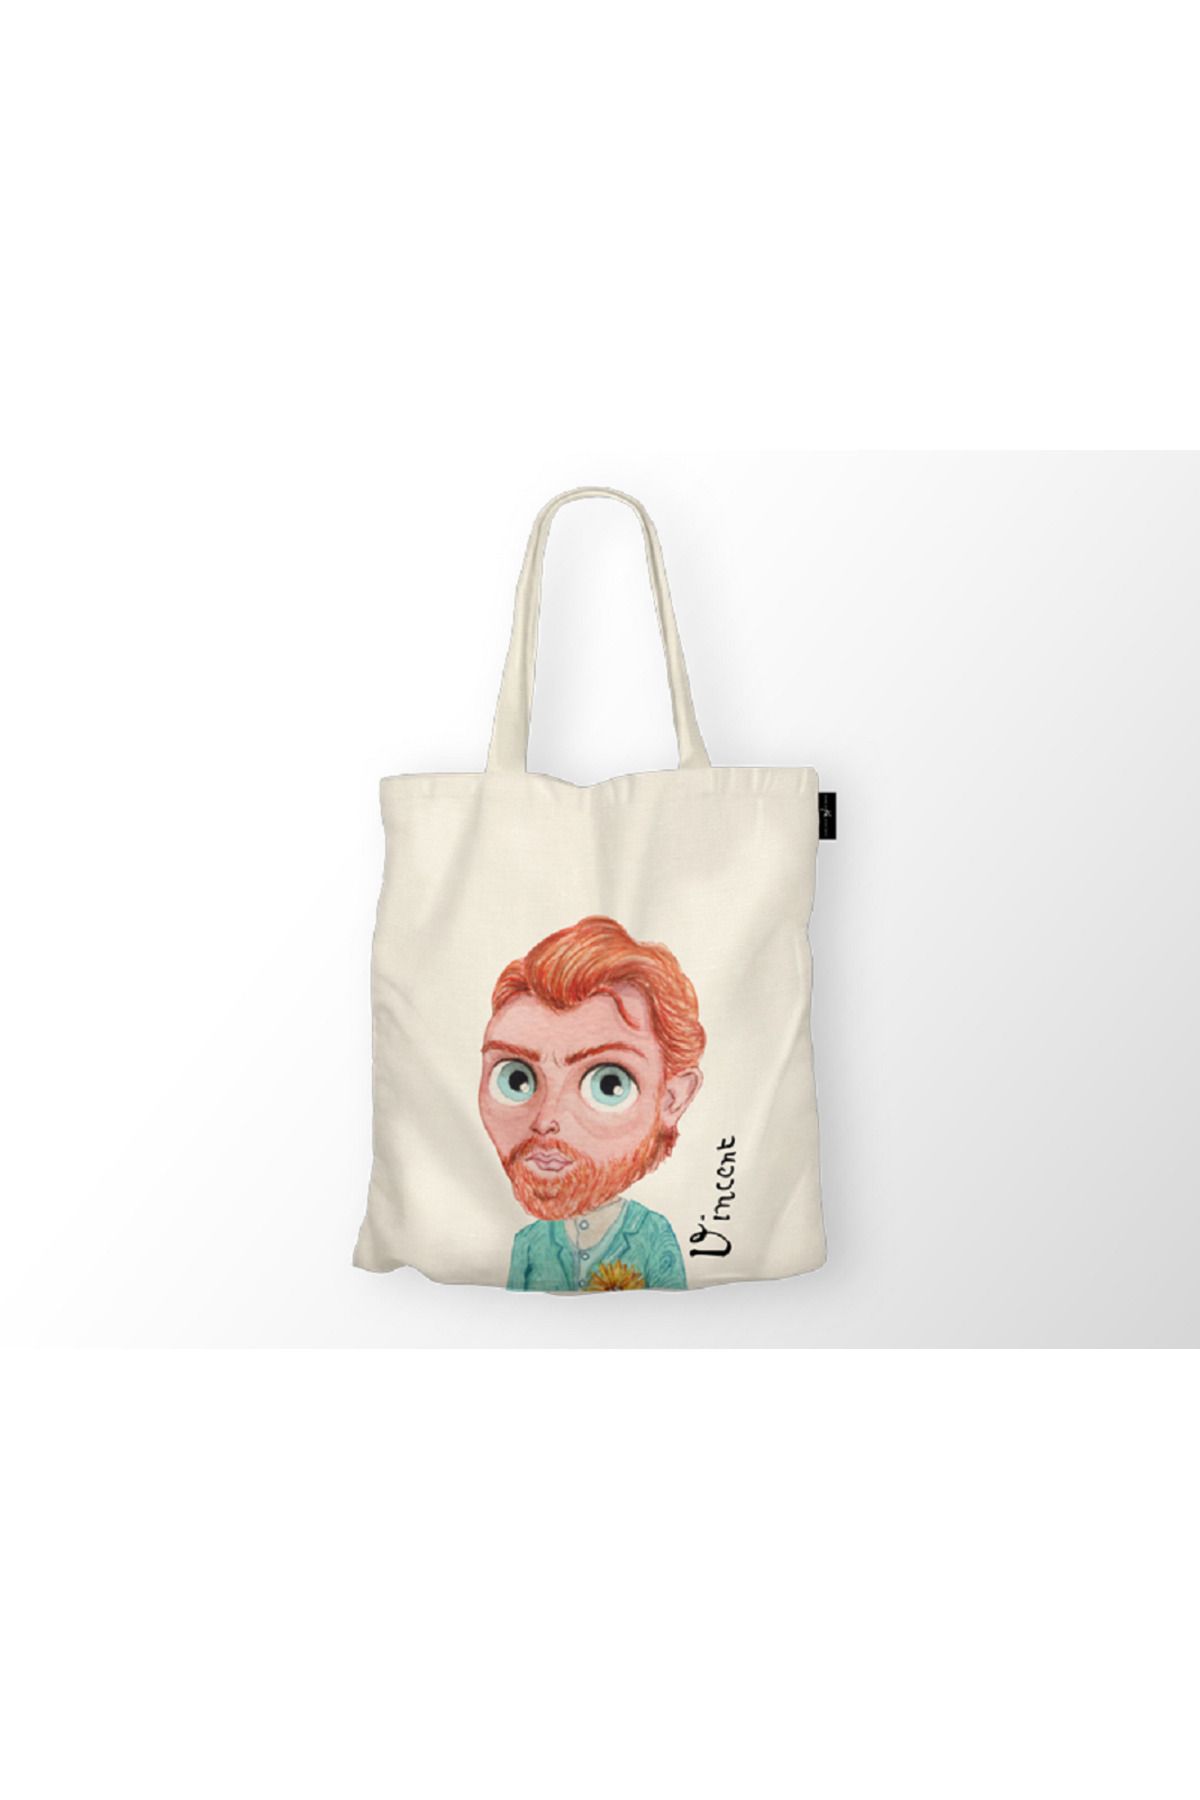 Kıvırcık Senyorita TM Bez Çanta - Van Gogh Baskılı Bez Çanta - Desenli Omuz Çantası - Keten Çanta